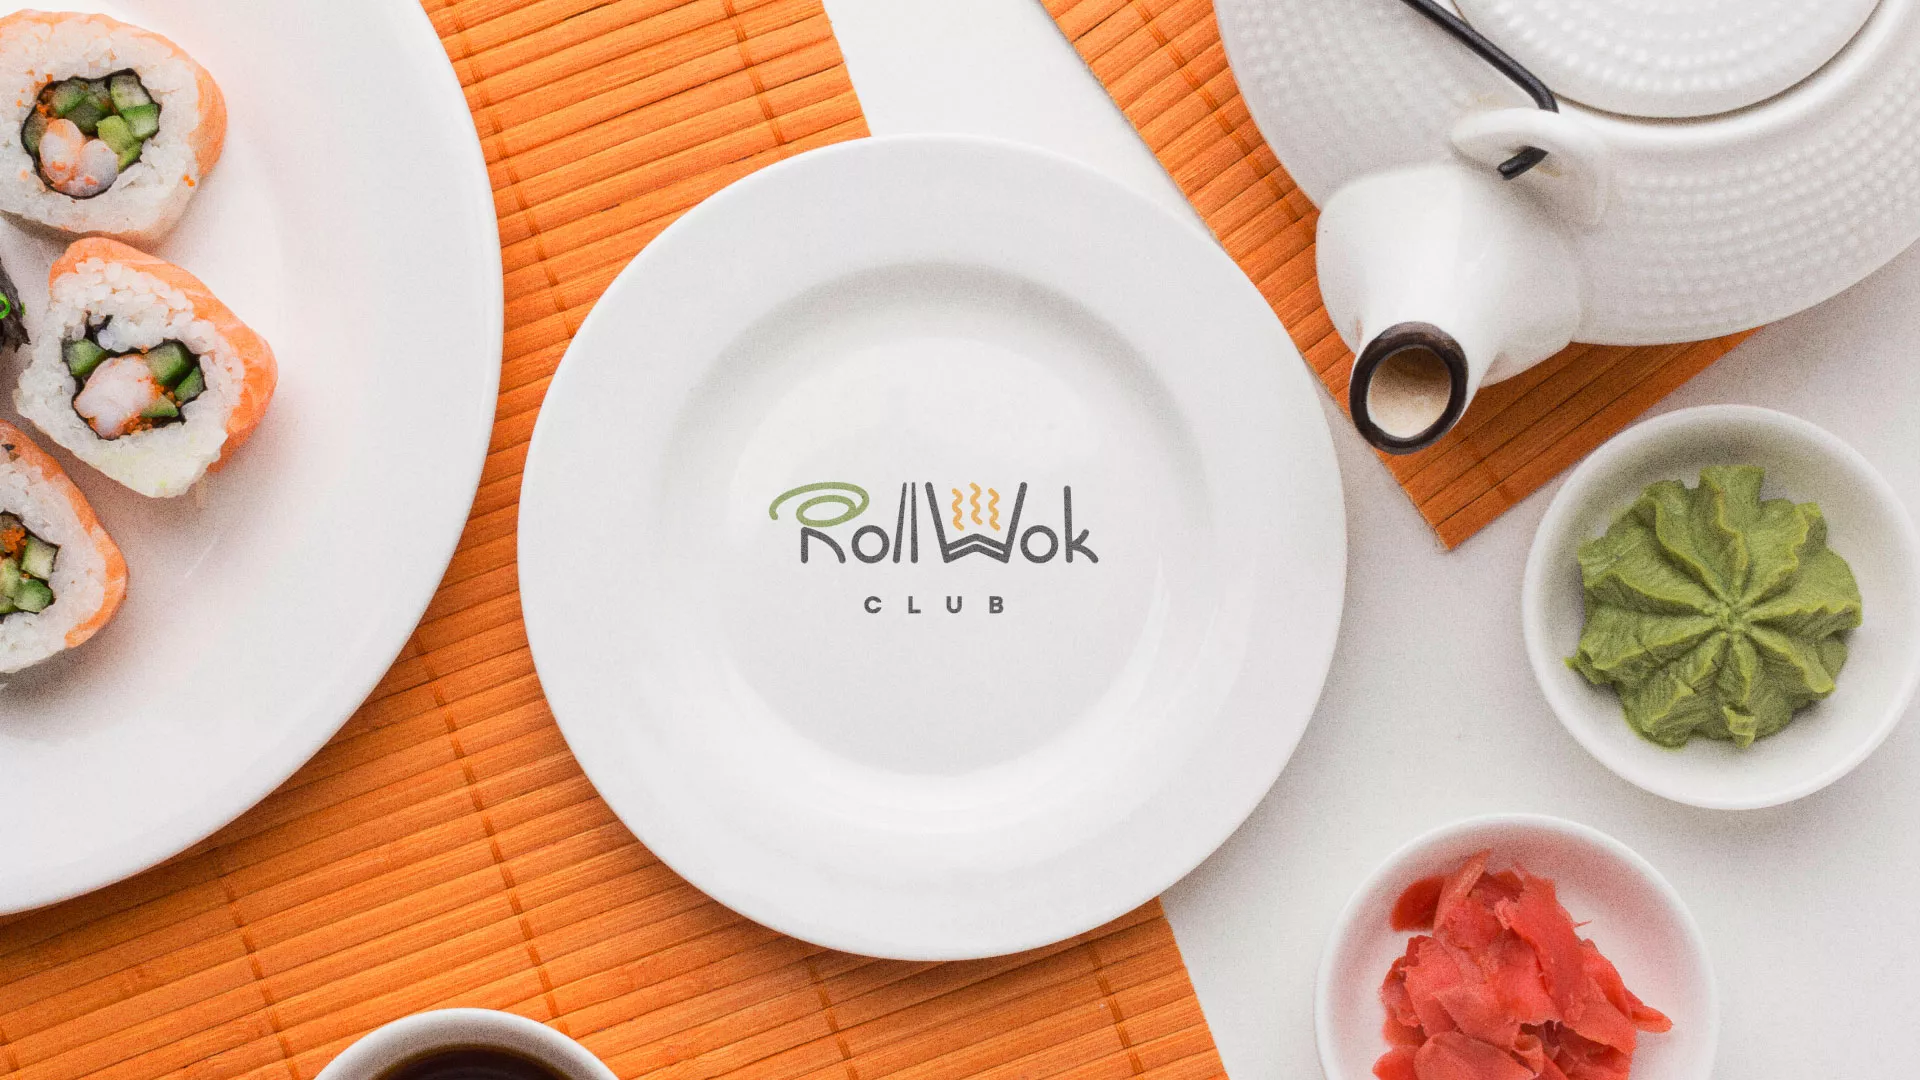 Разработка логотипа и фирменного стиля суши-бара «Roll Wok Club» в Горняке